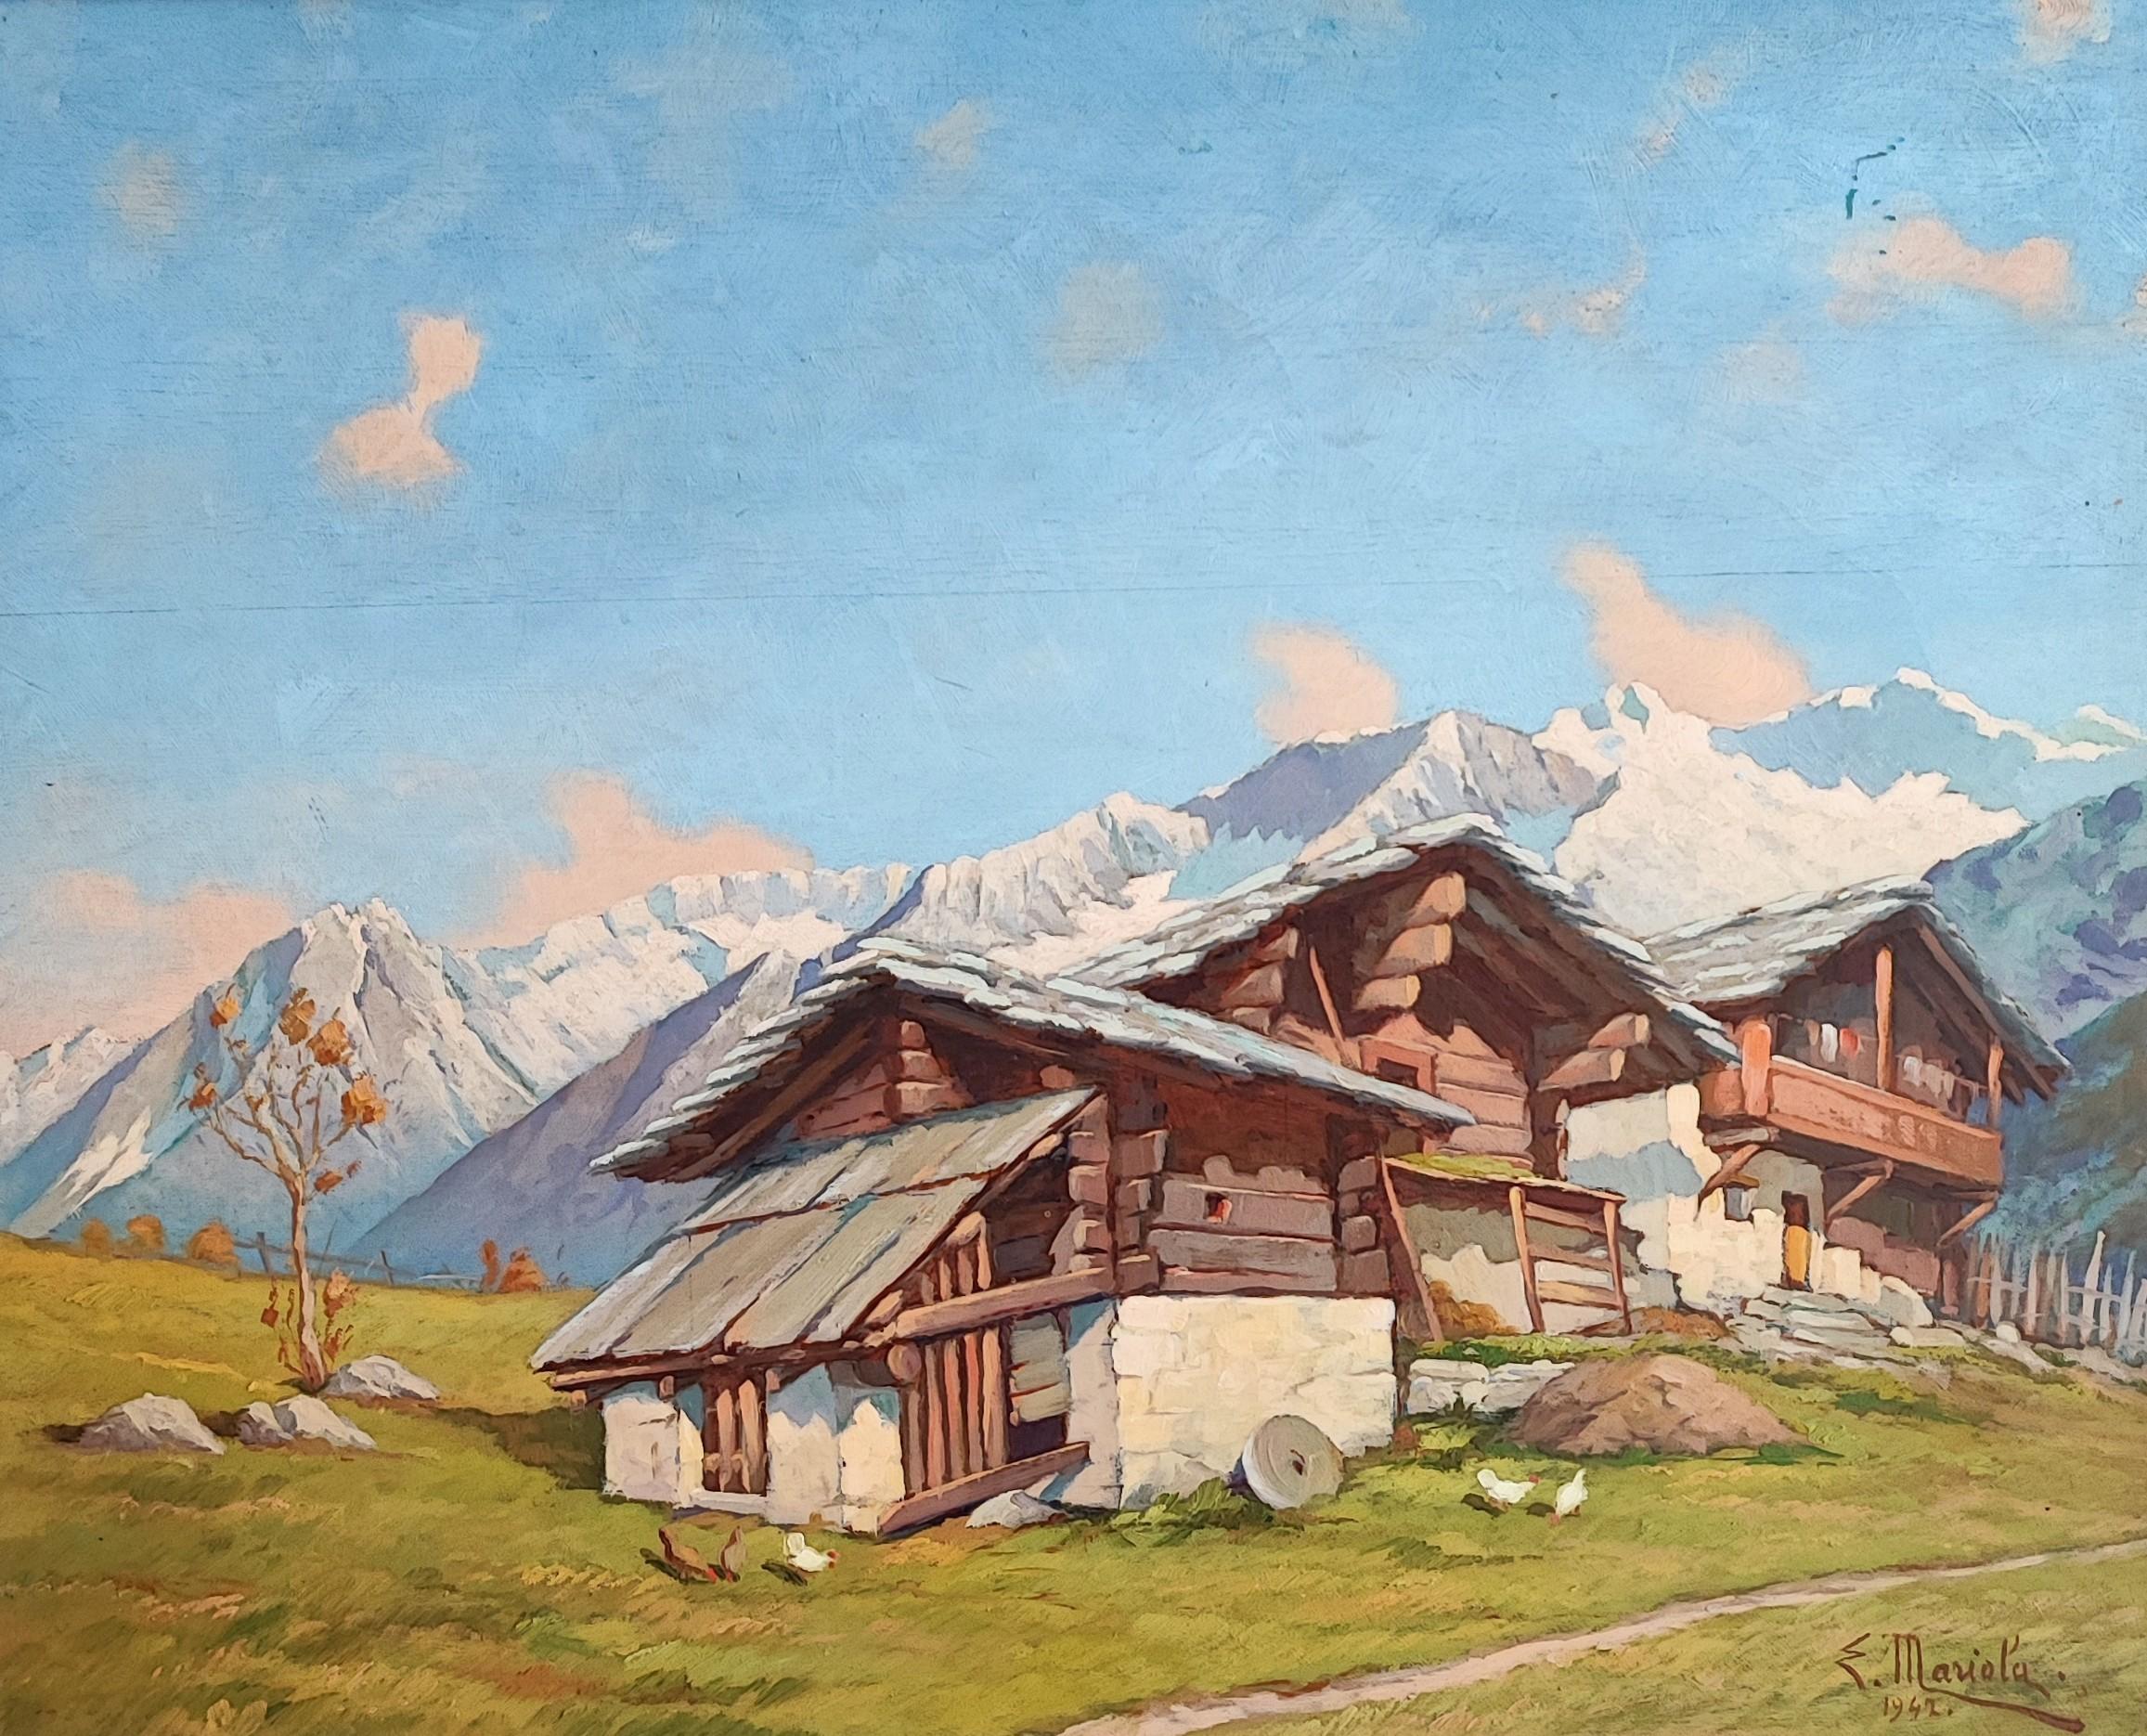 E. Mariola Landscape Painting - Paysage de montagne avec chalets